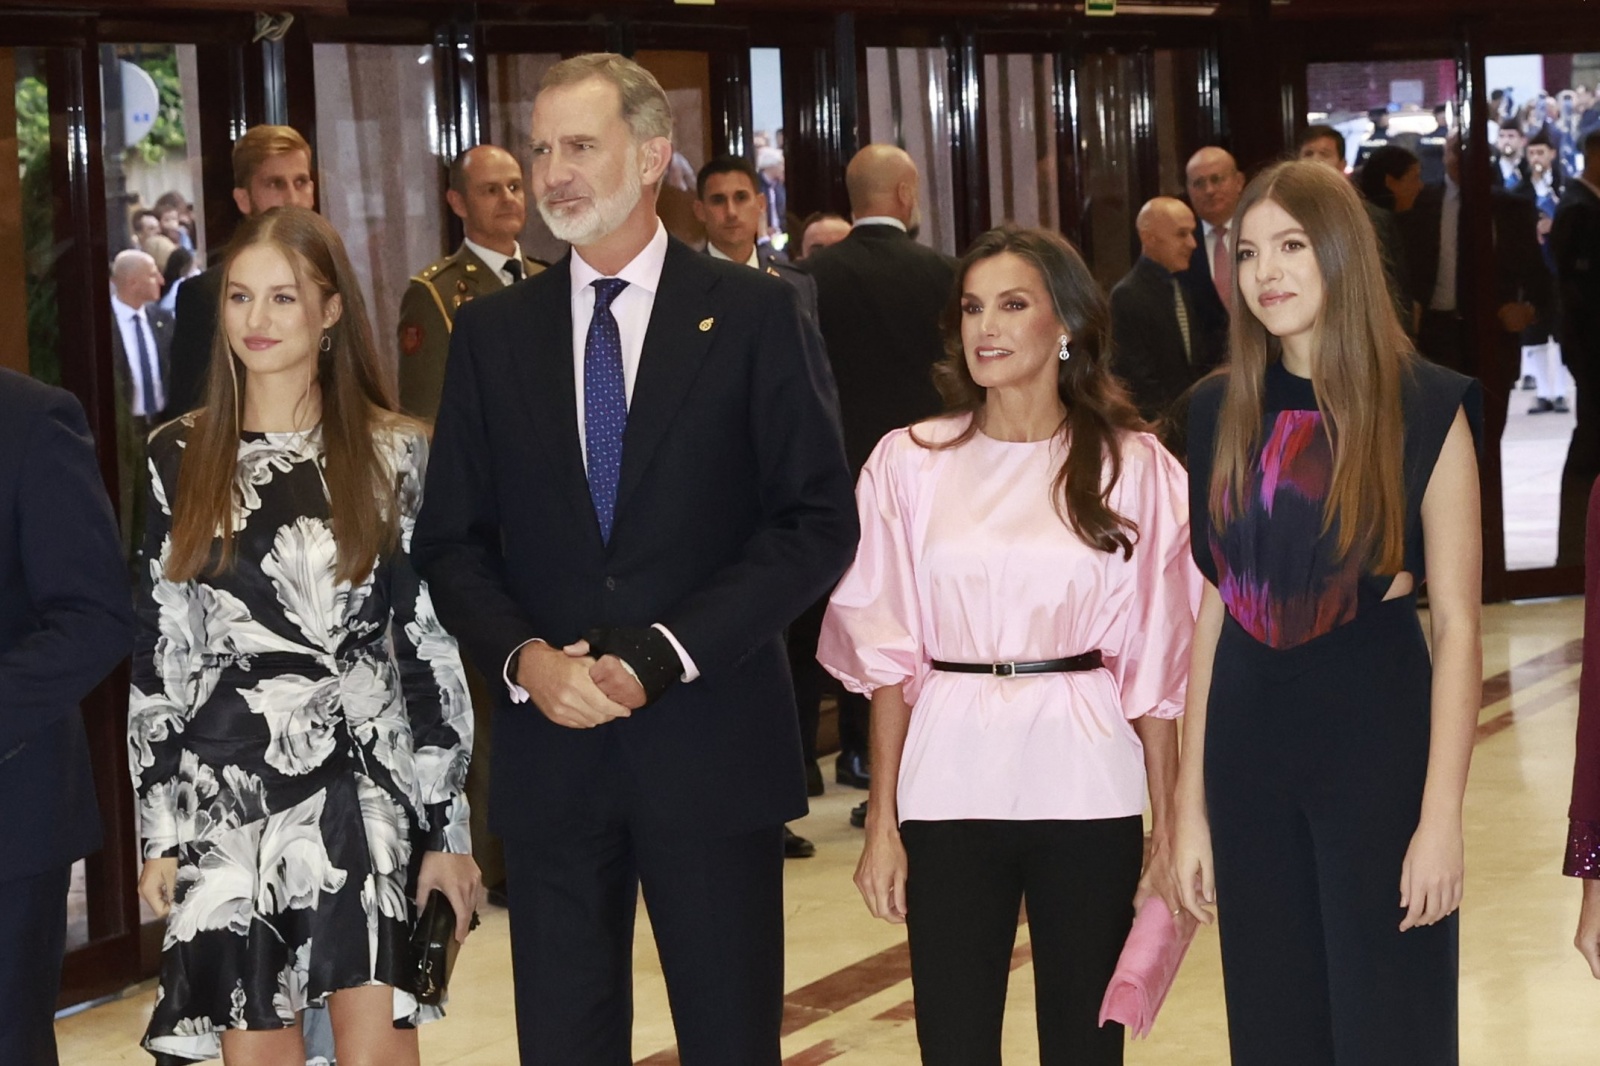 Concerto dos Prémios Princesa das Asturias marcado pelo reencontro da infanta Sofia com a princesa Leonor e os pais